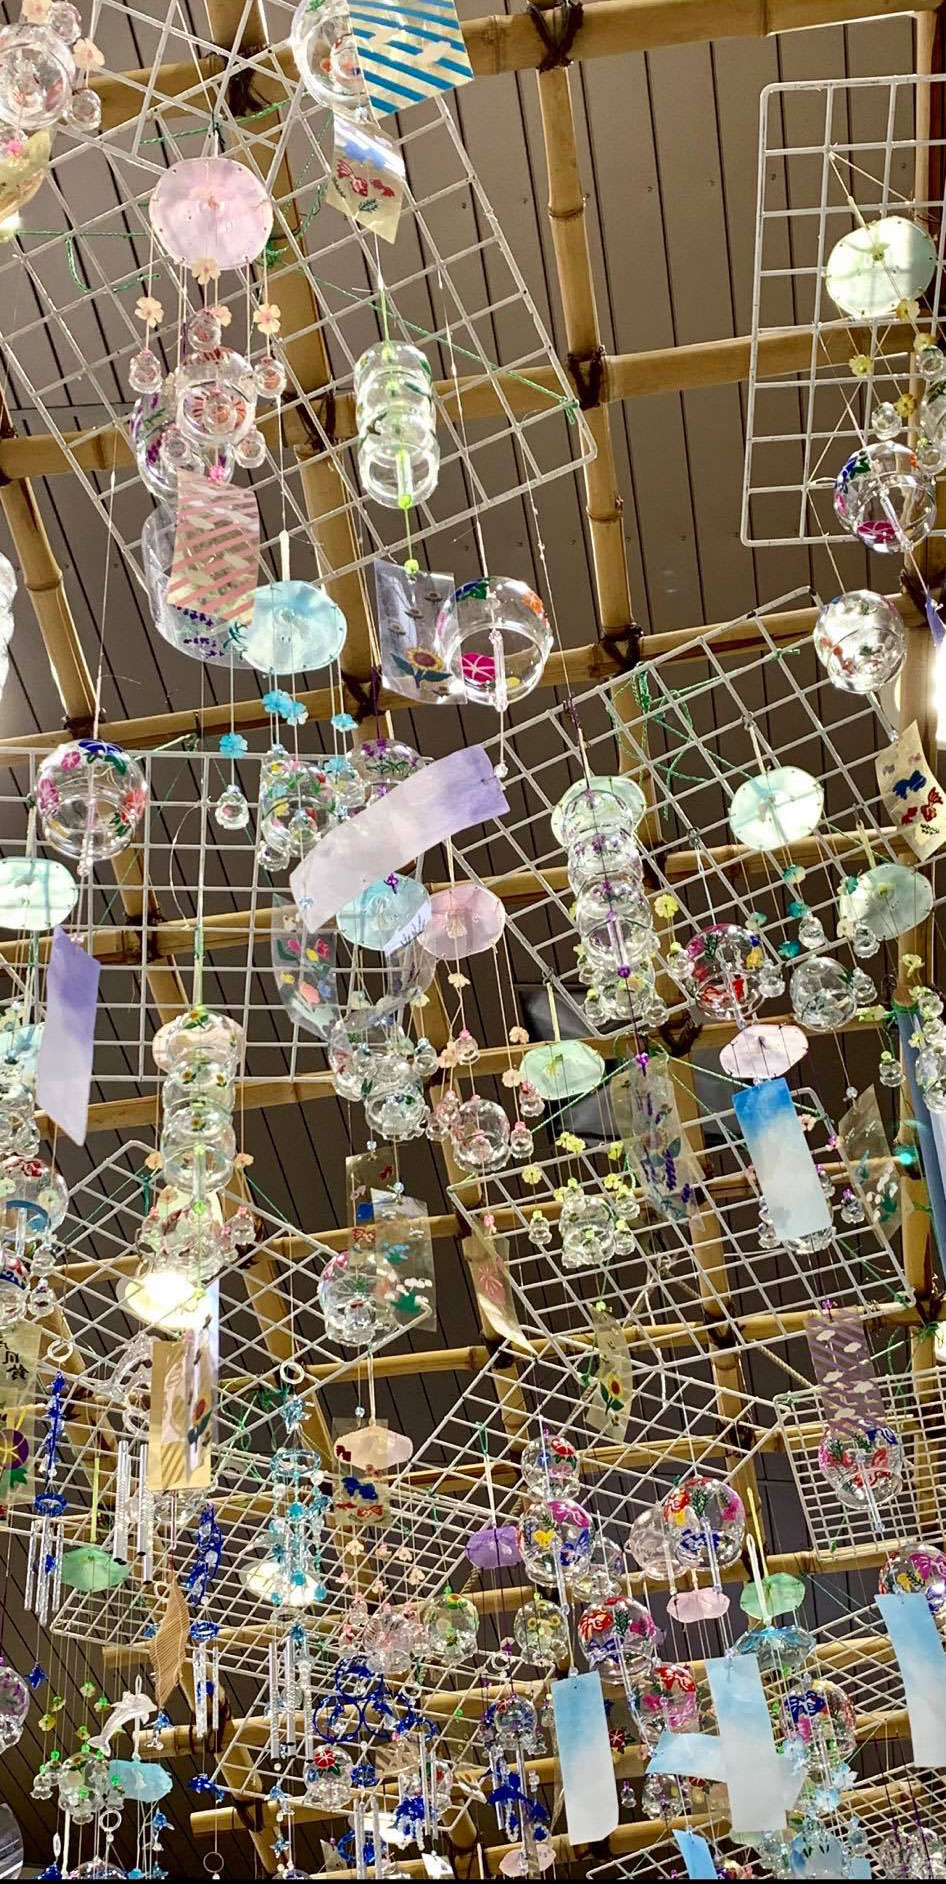 夏の風物詩、8月末までJR上諏訪駅で約300個の風鈴飾り付け実施中 – 八ヶ岳をガイドする ハチ旅